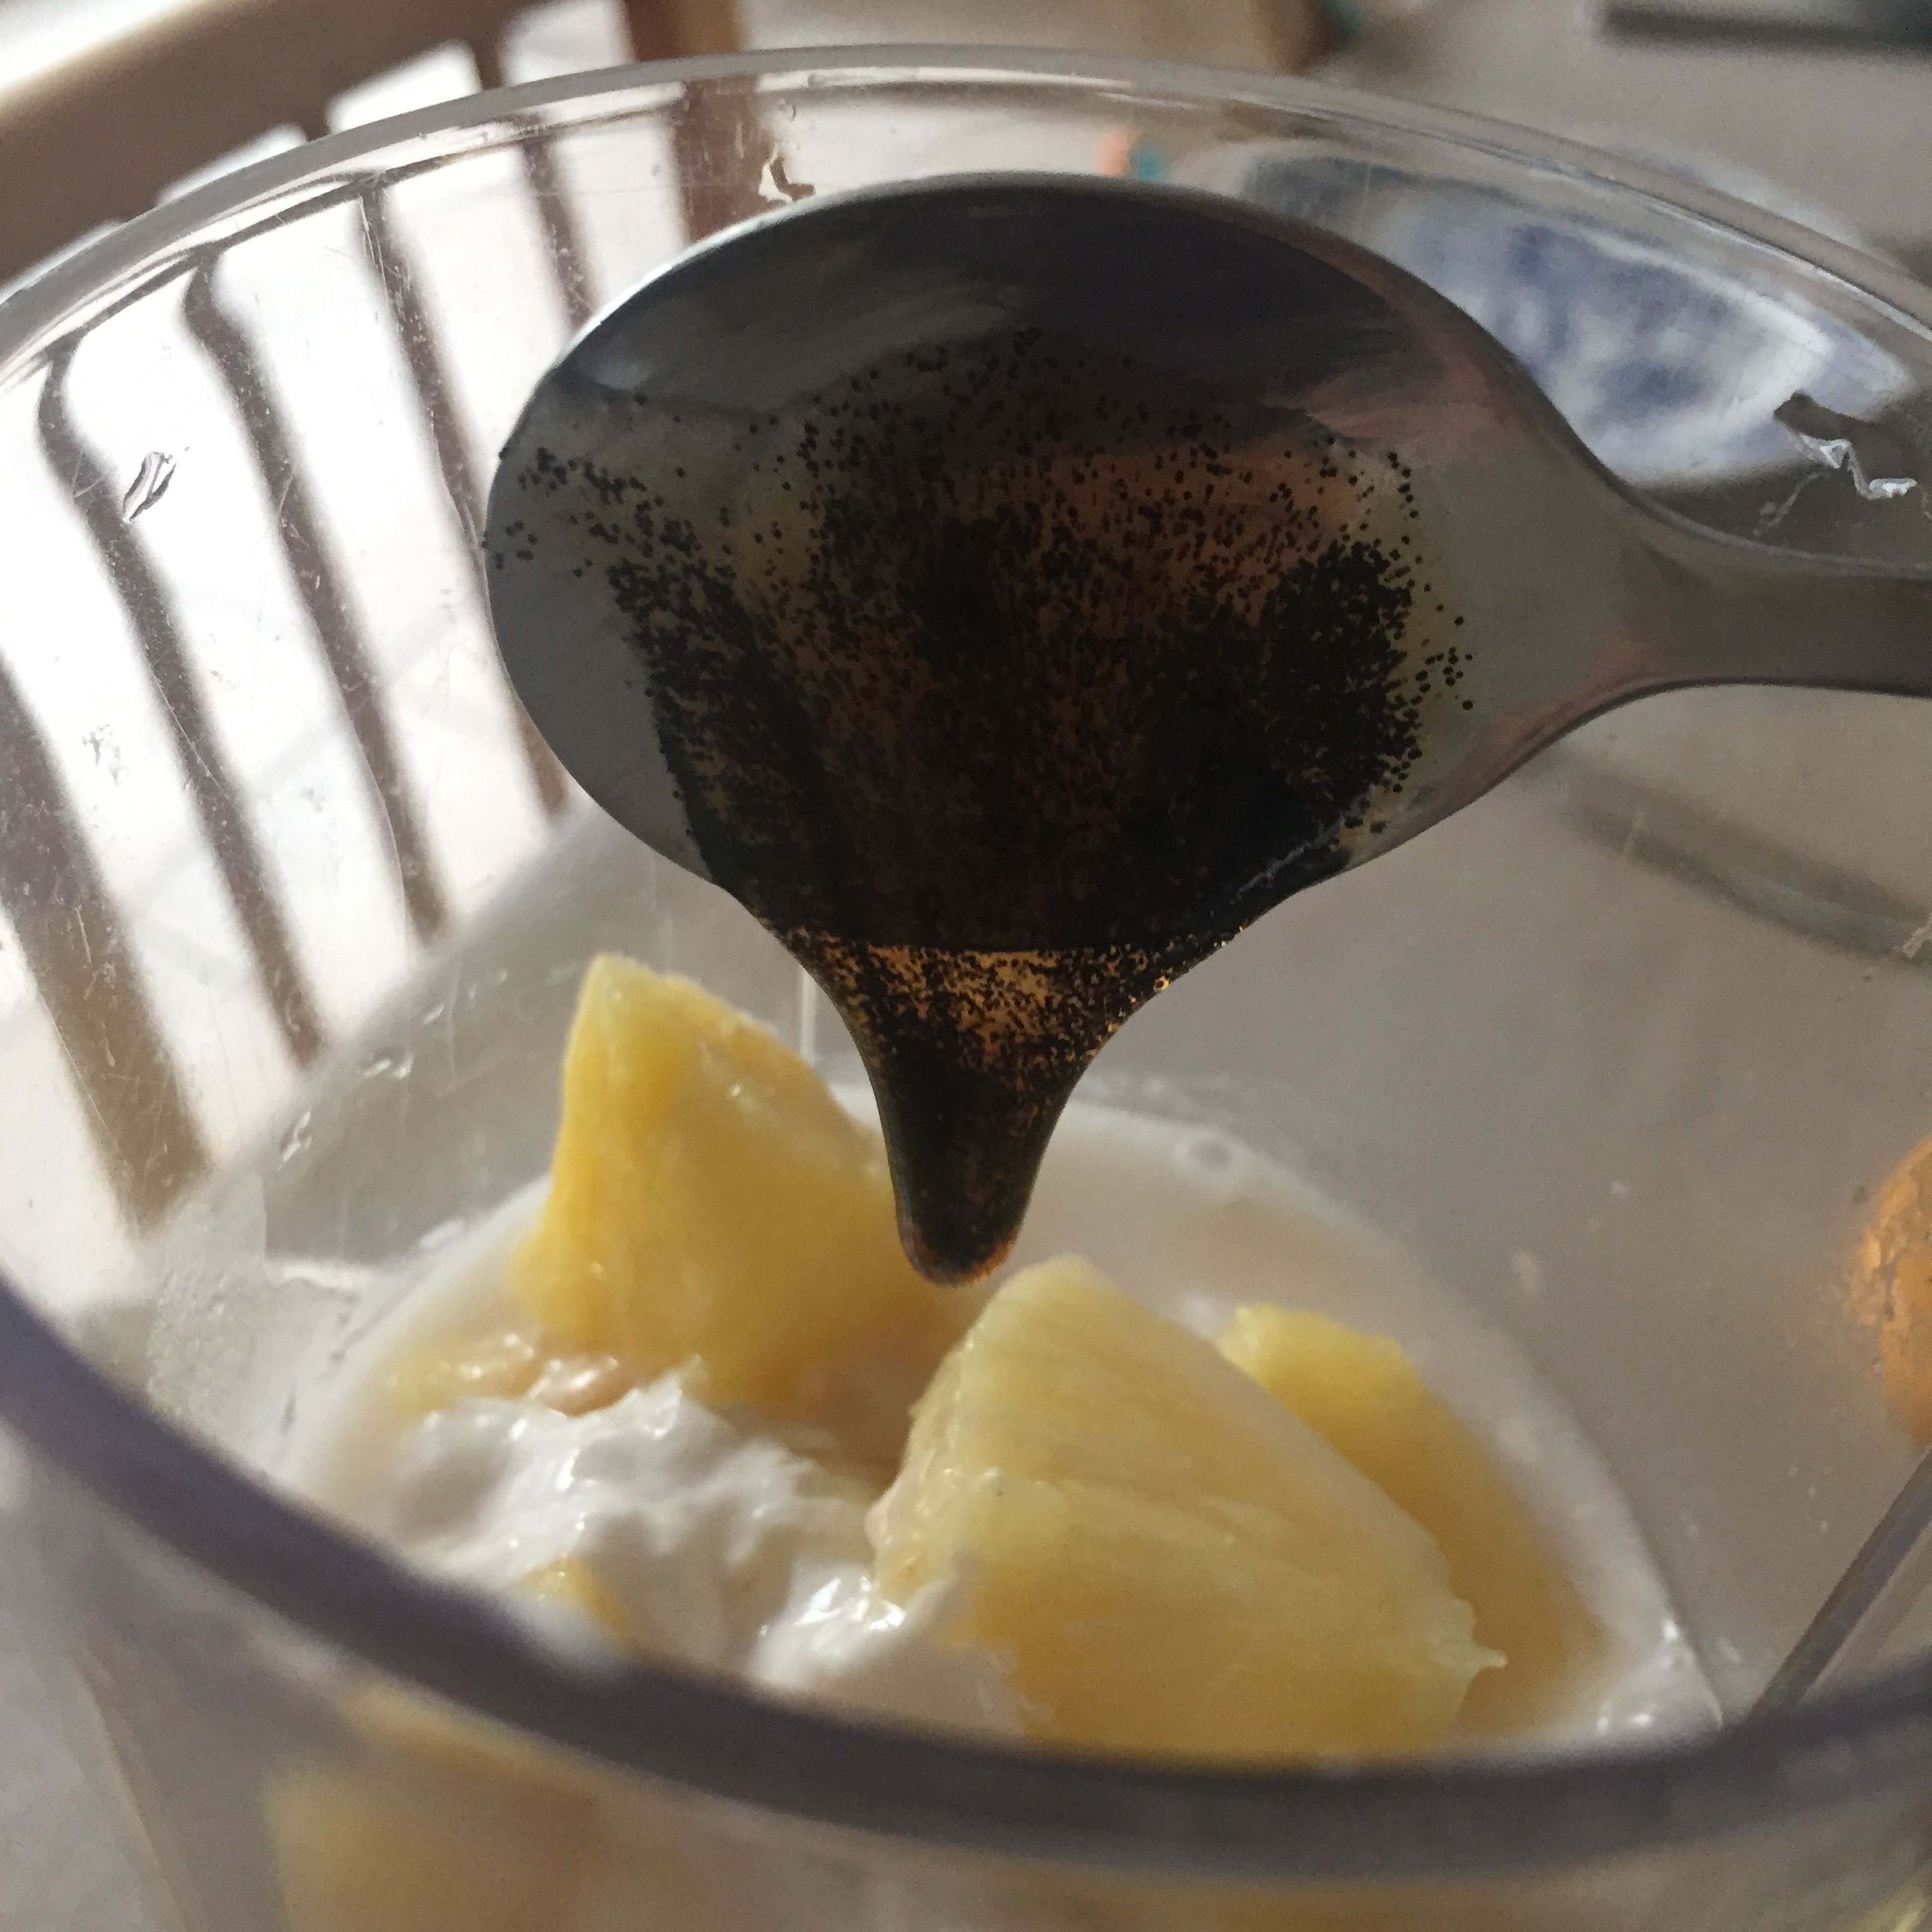 Tue die Ananas zusammen mit der Kokosmilch und dem Vanillemark in den mixer, und mixe dies ca. 1 Minute.